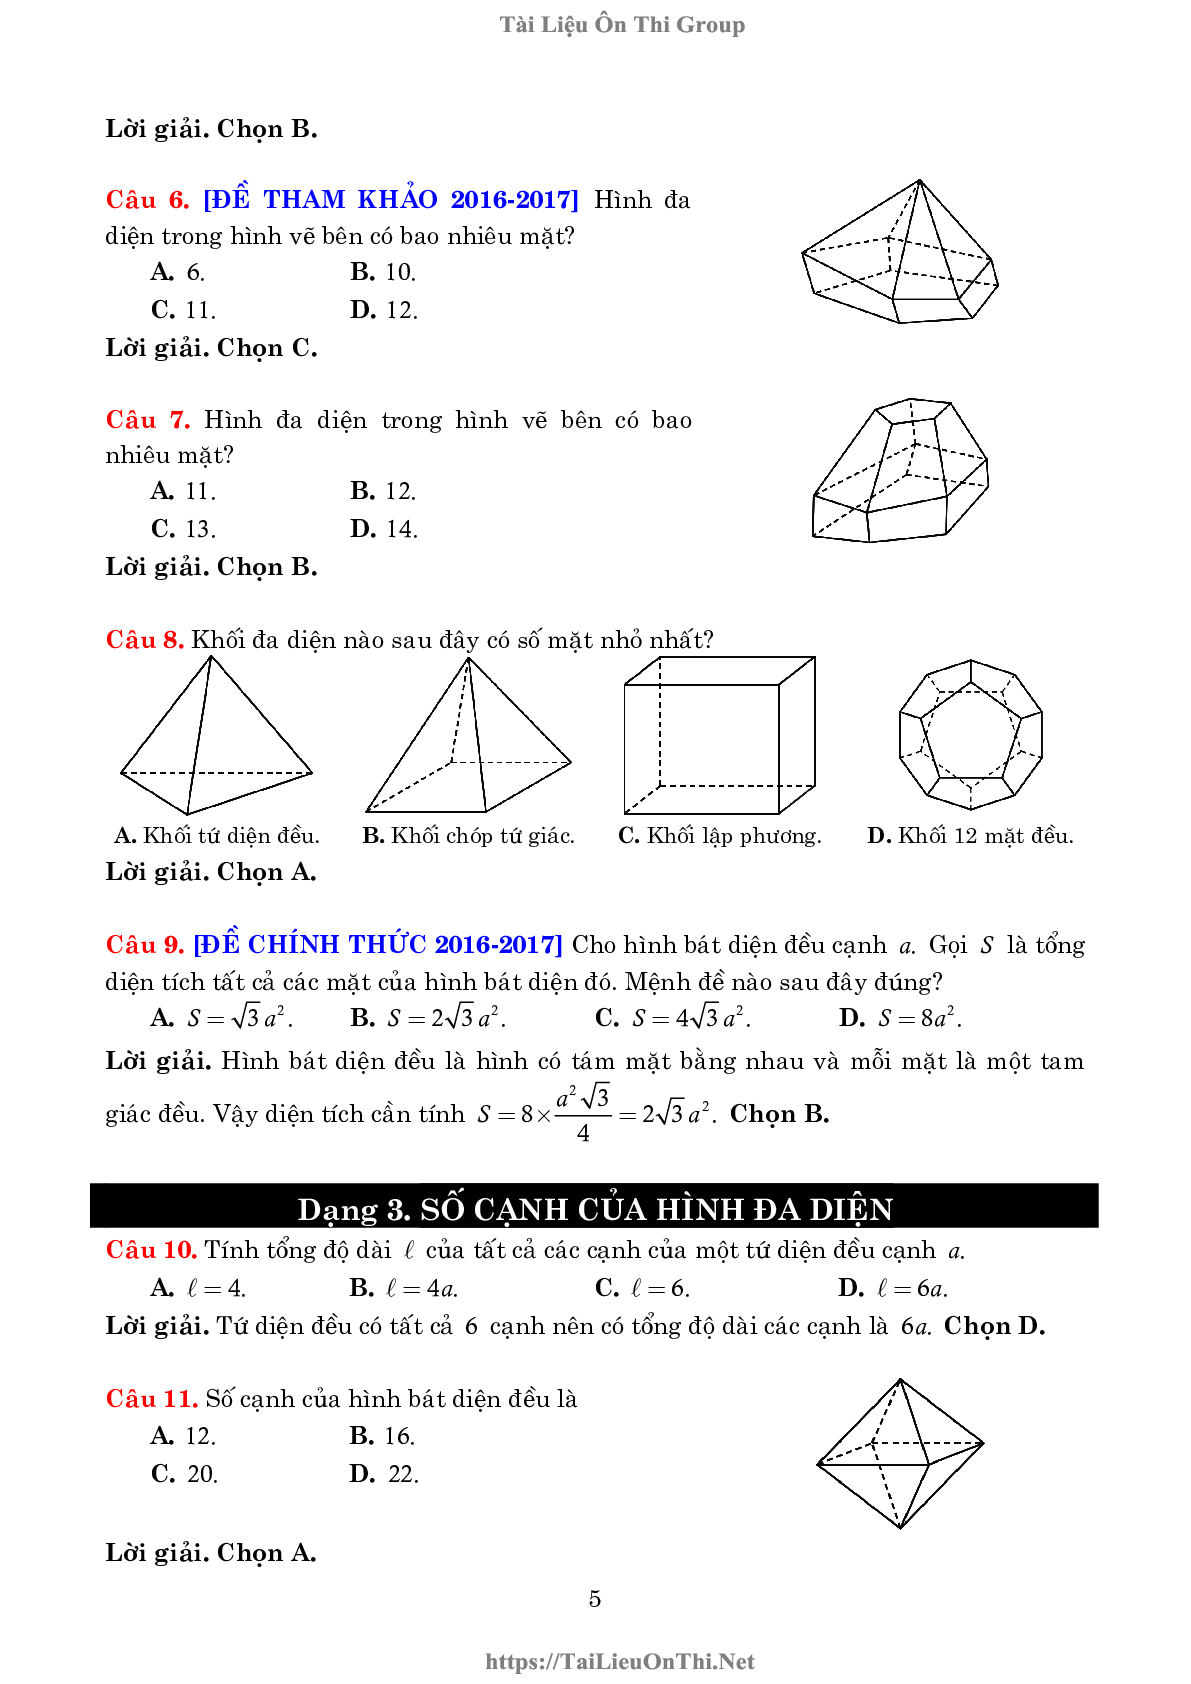 Lý thuyết và bài tập về khối đa diện và thể tích của chúng (trang 5)